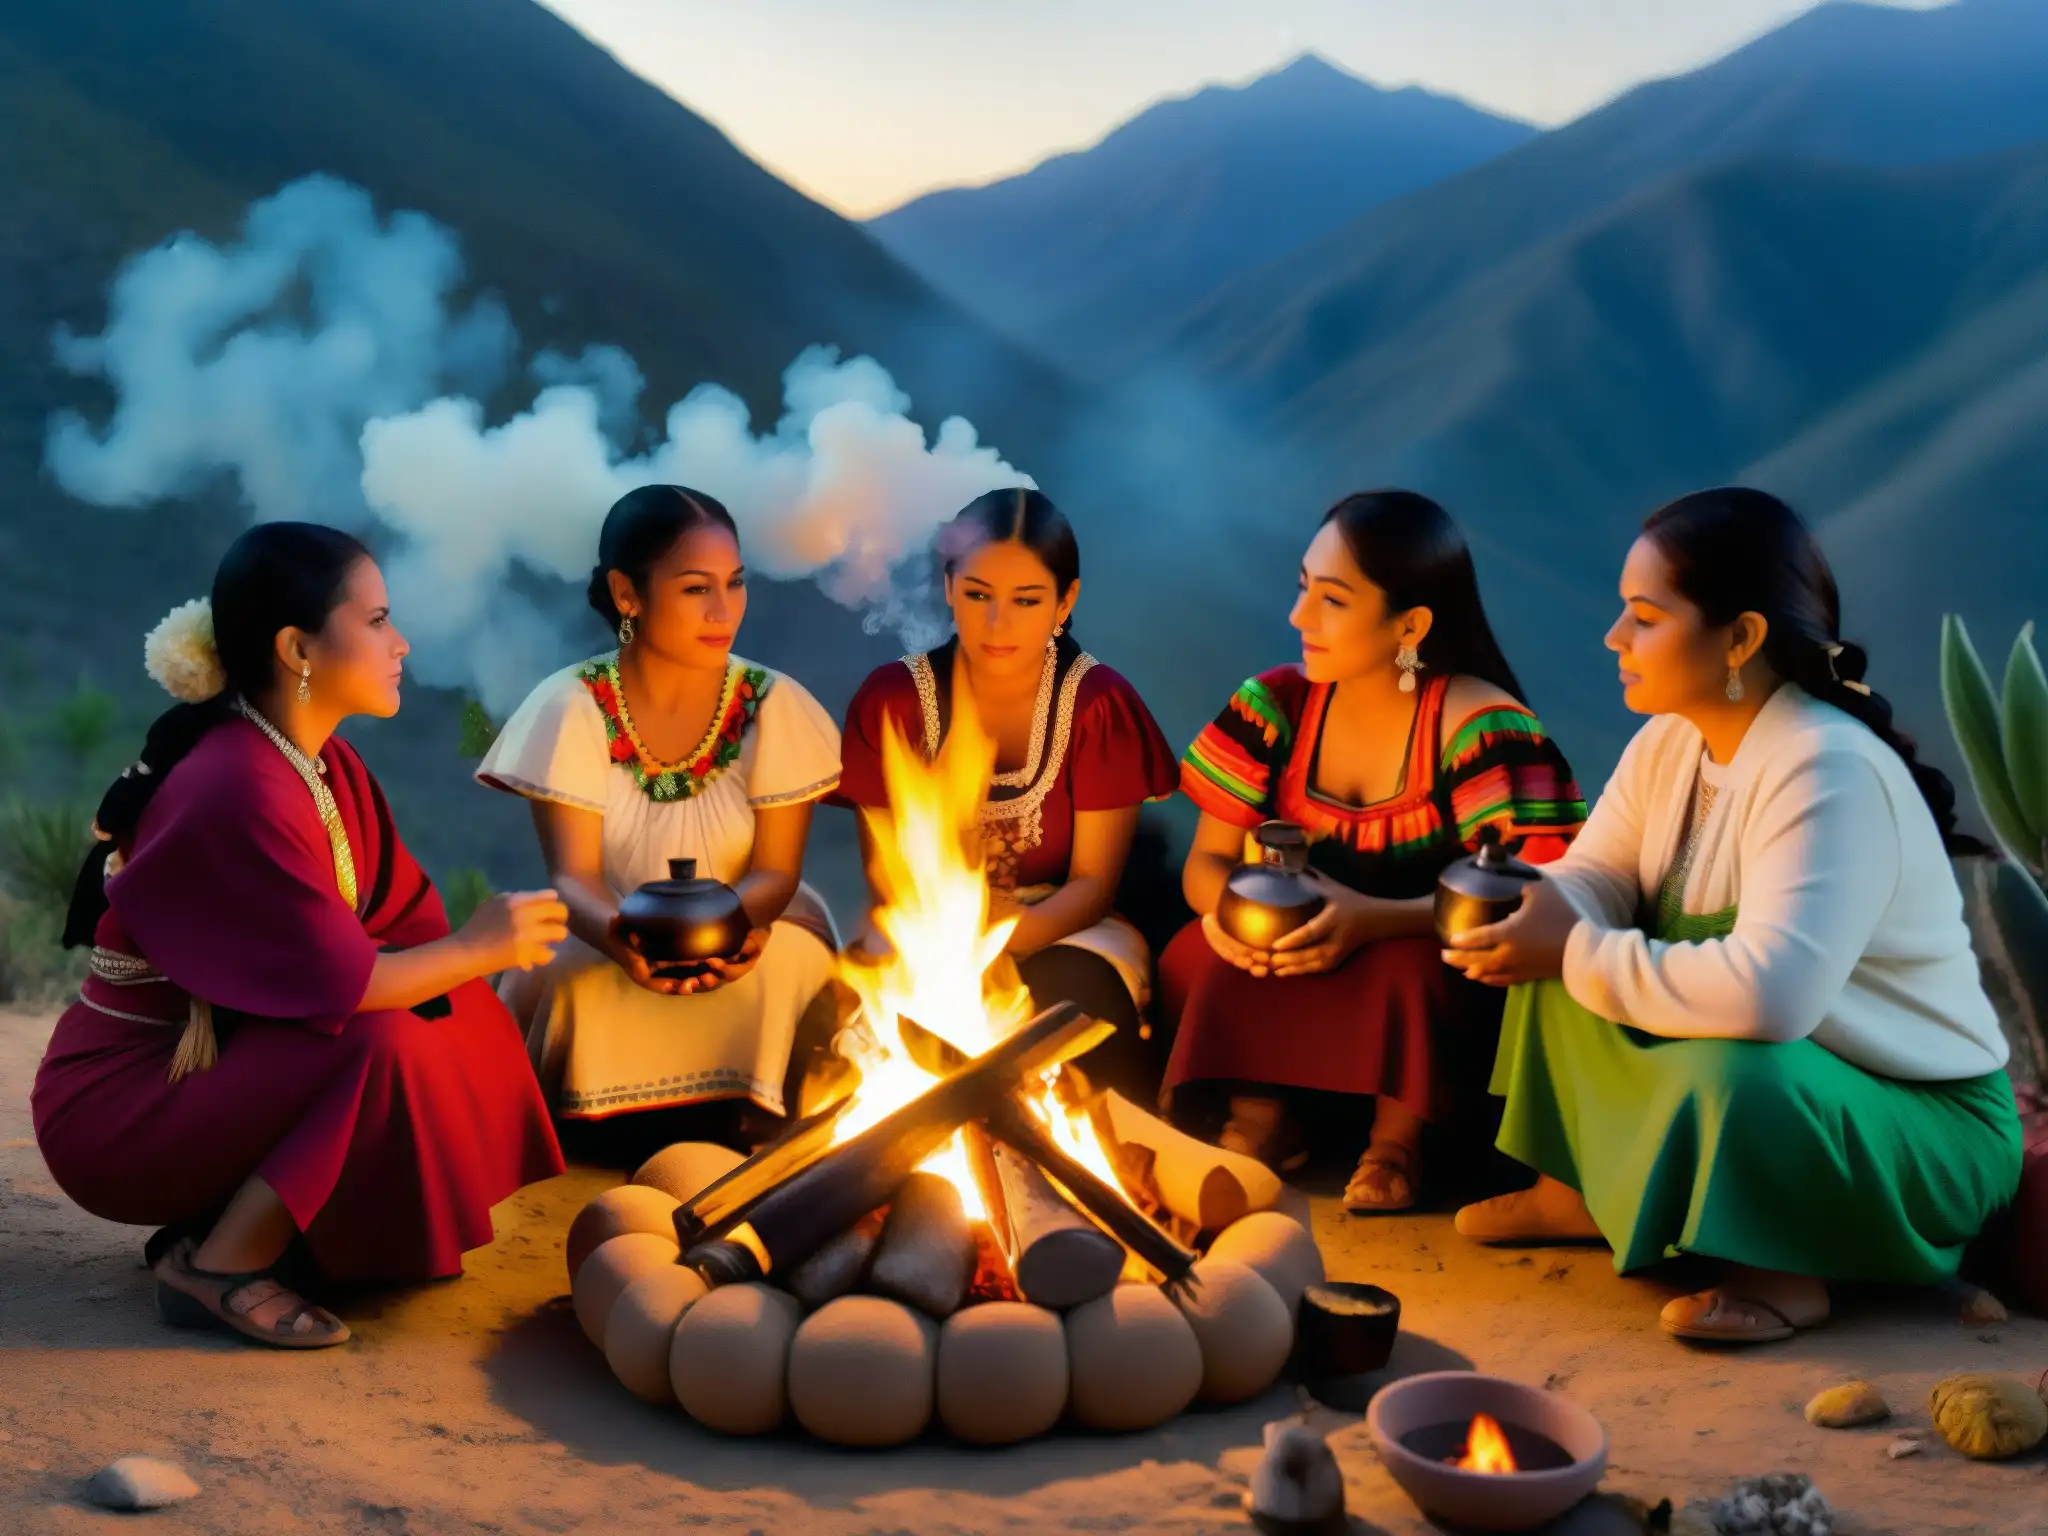 Mujeres realizan ritual en la Sierra Madre, con fuego y misticismo